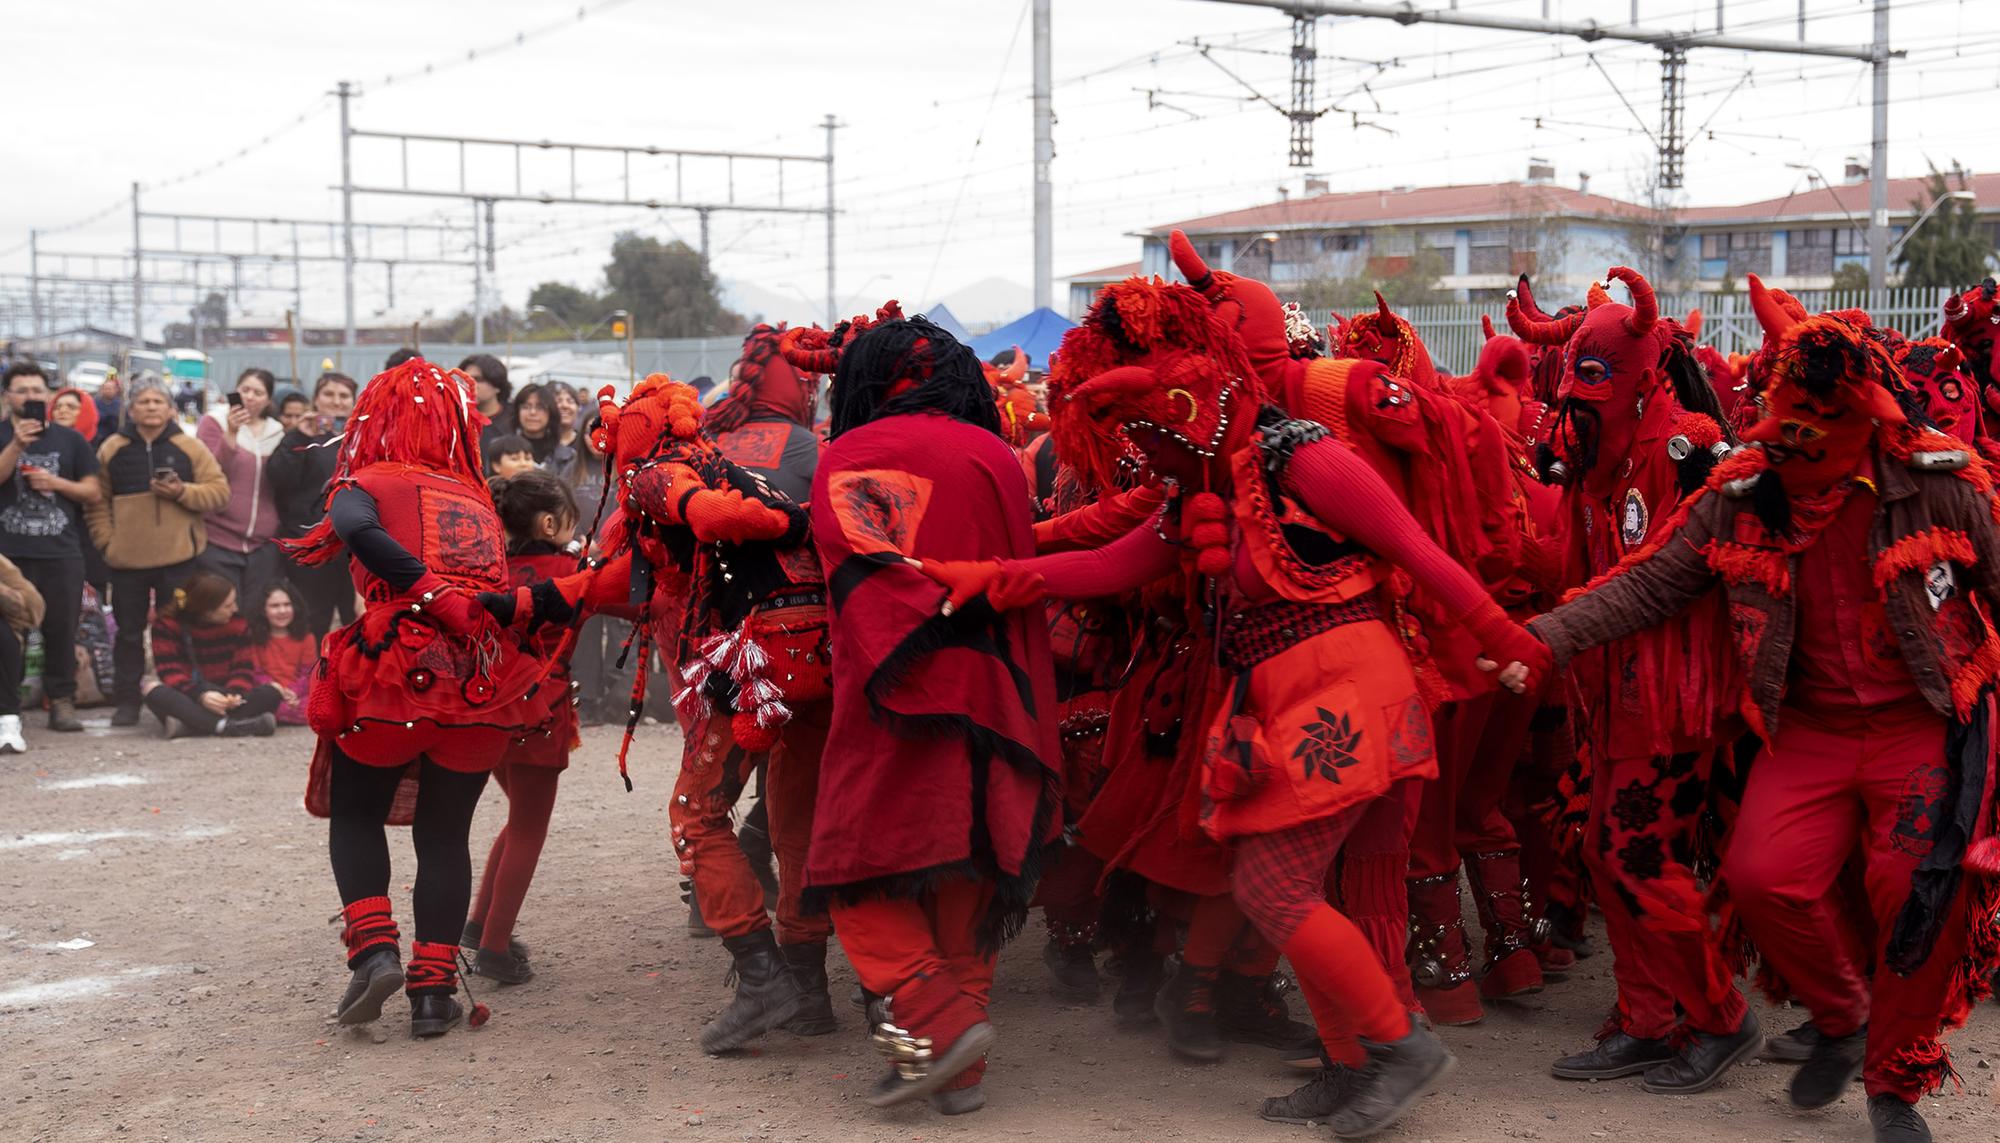 El baile de los Diablos Rojos ha acompañado todos los aniversarios del golpe de Estado desde su creación en 2009.